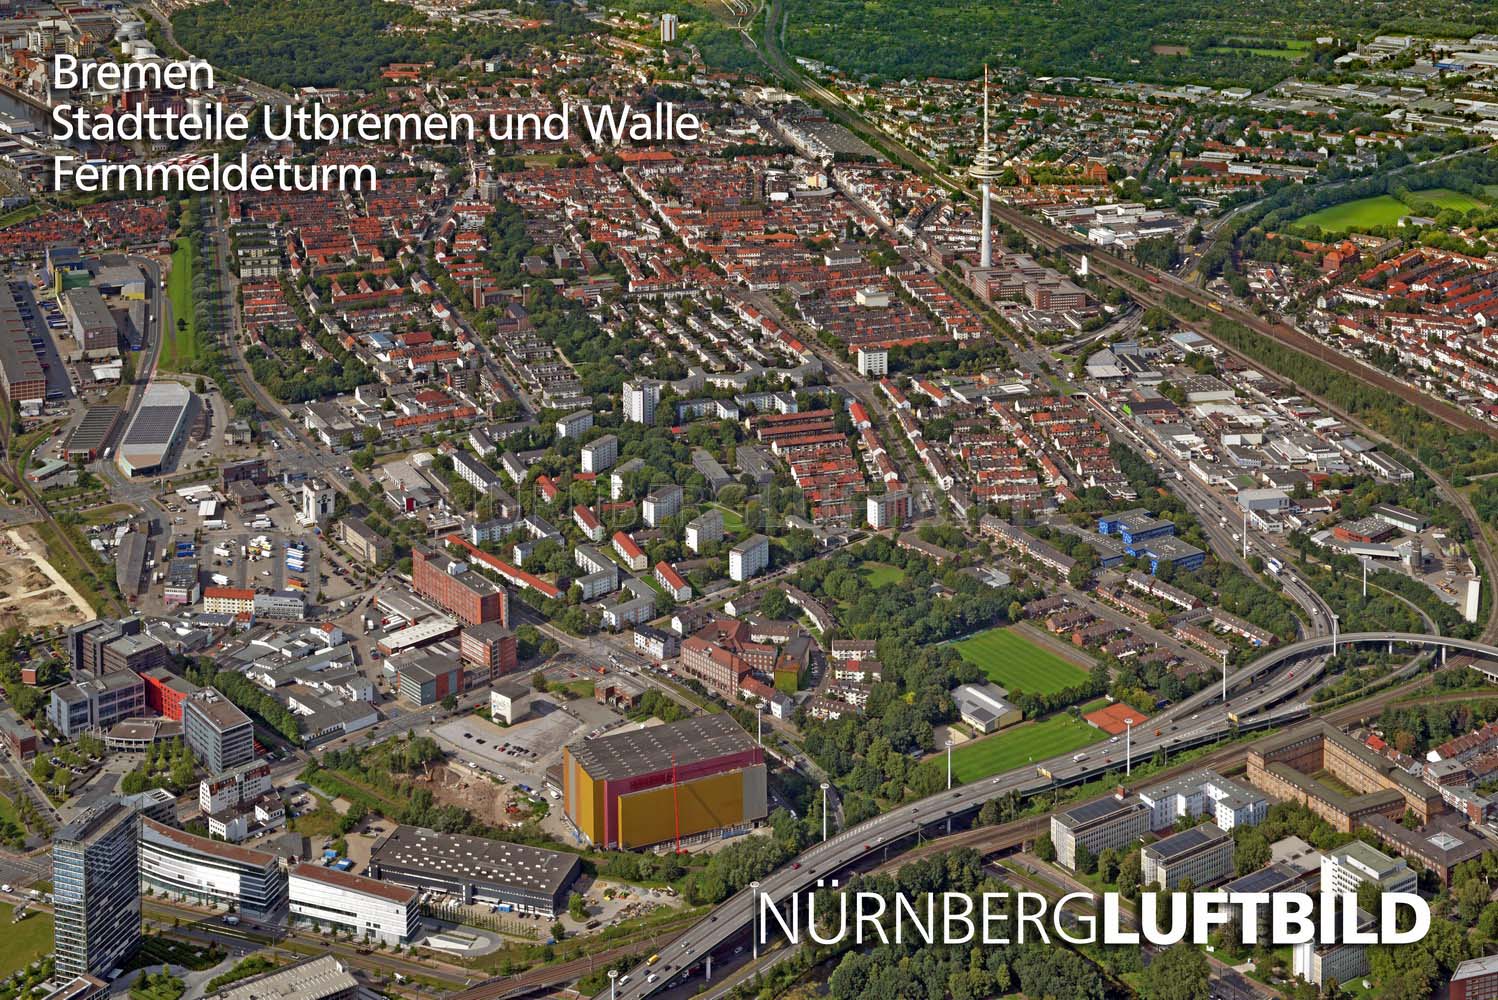 Bremen, Stadtteile Utbremen und Walle, Fernmeldeturm, Luftbild